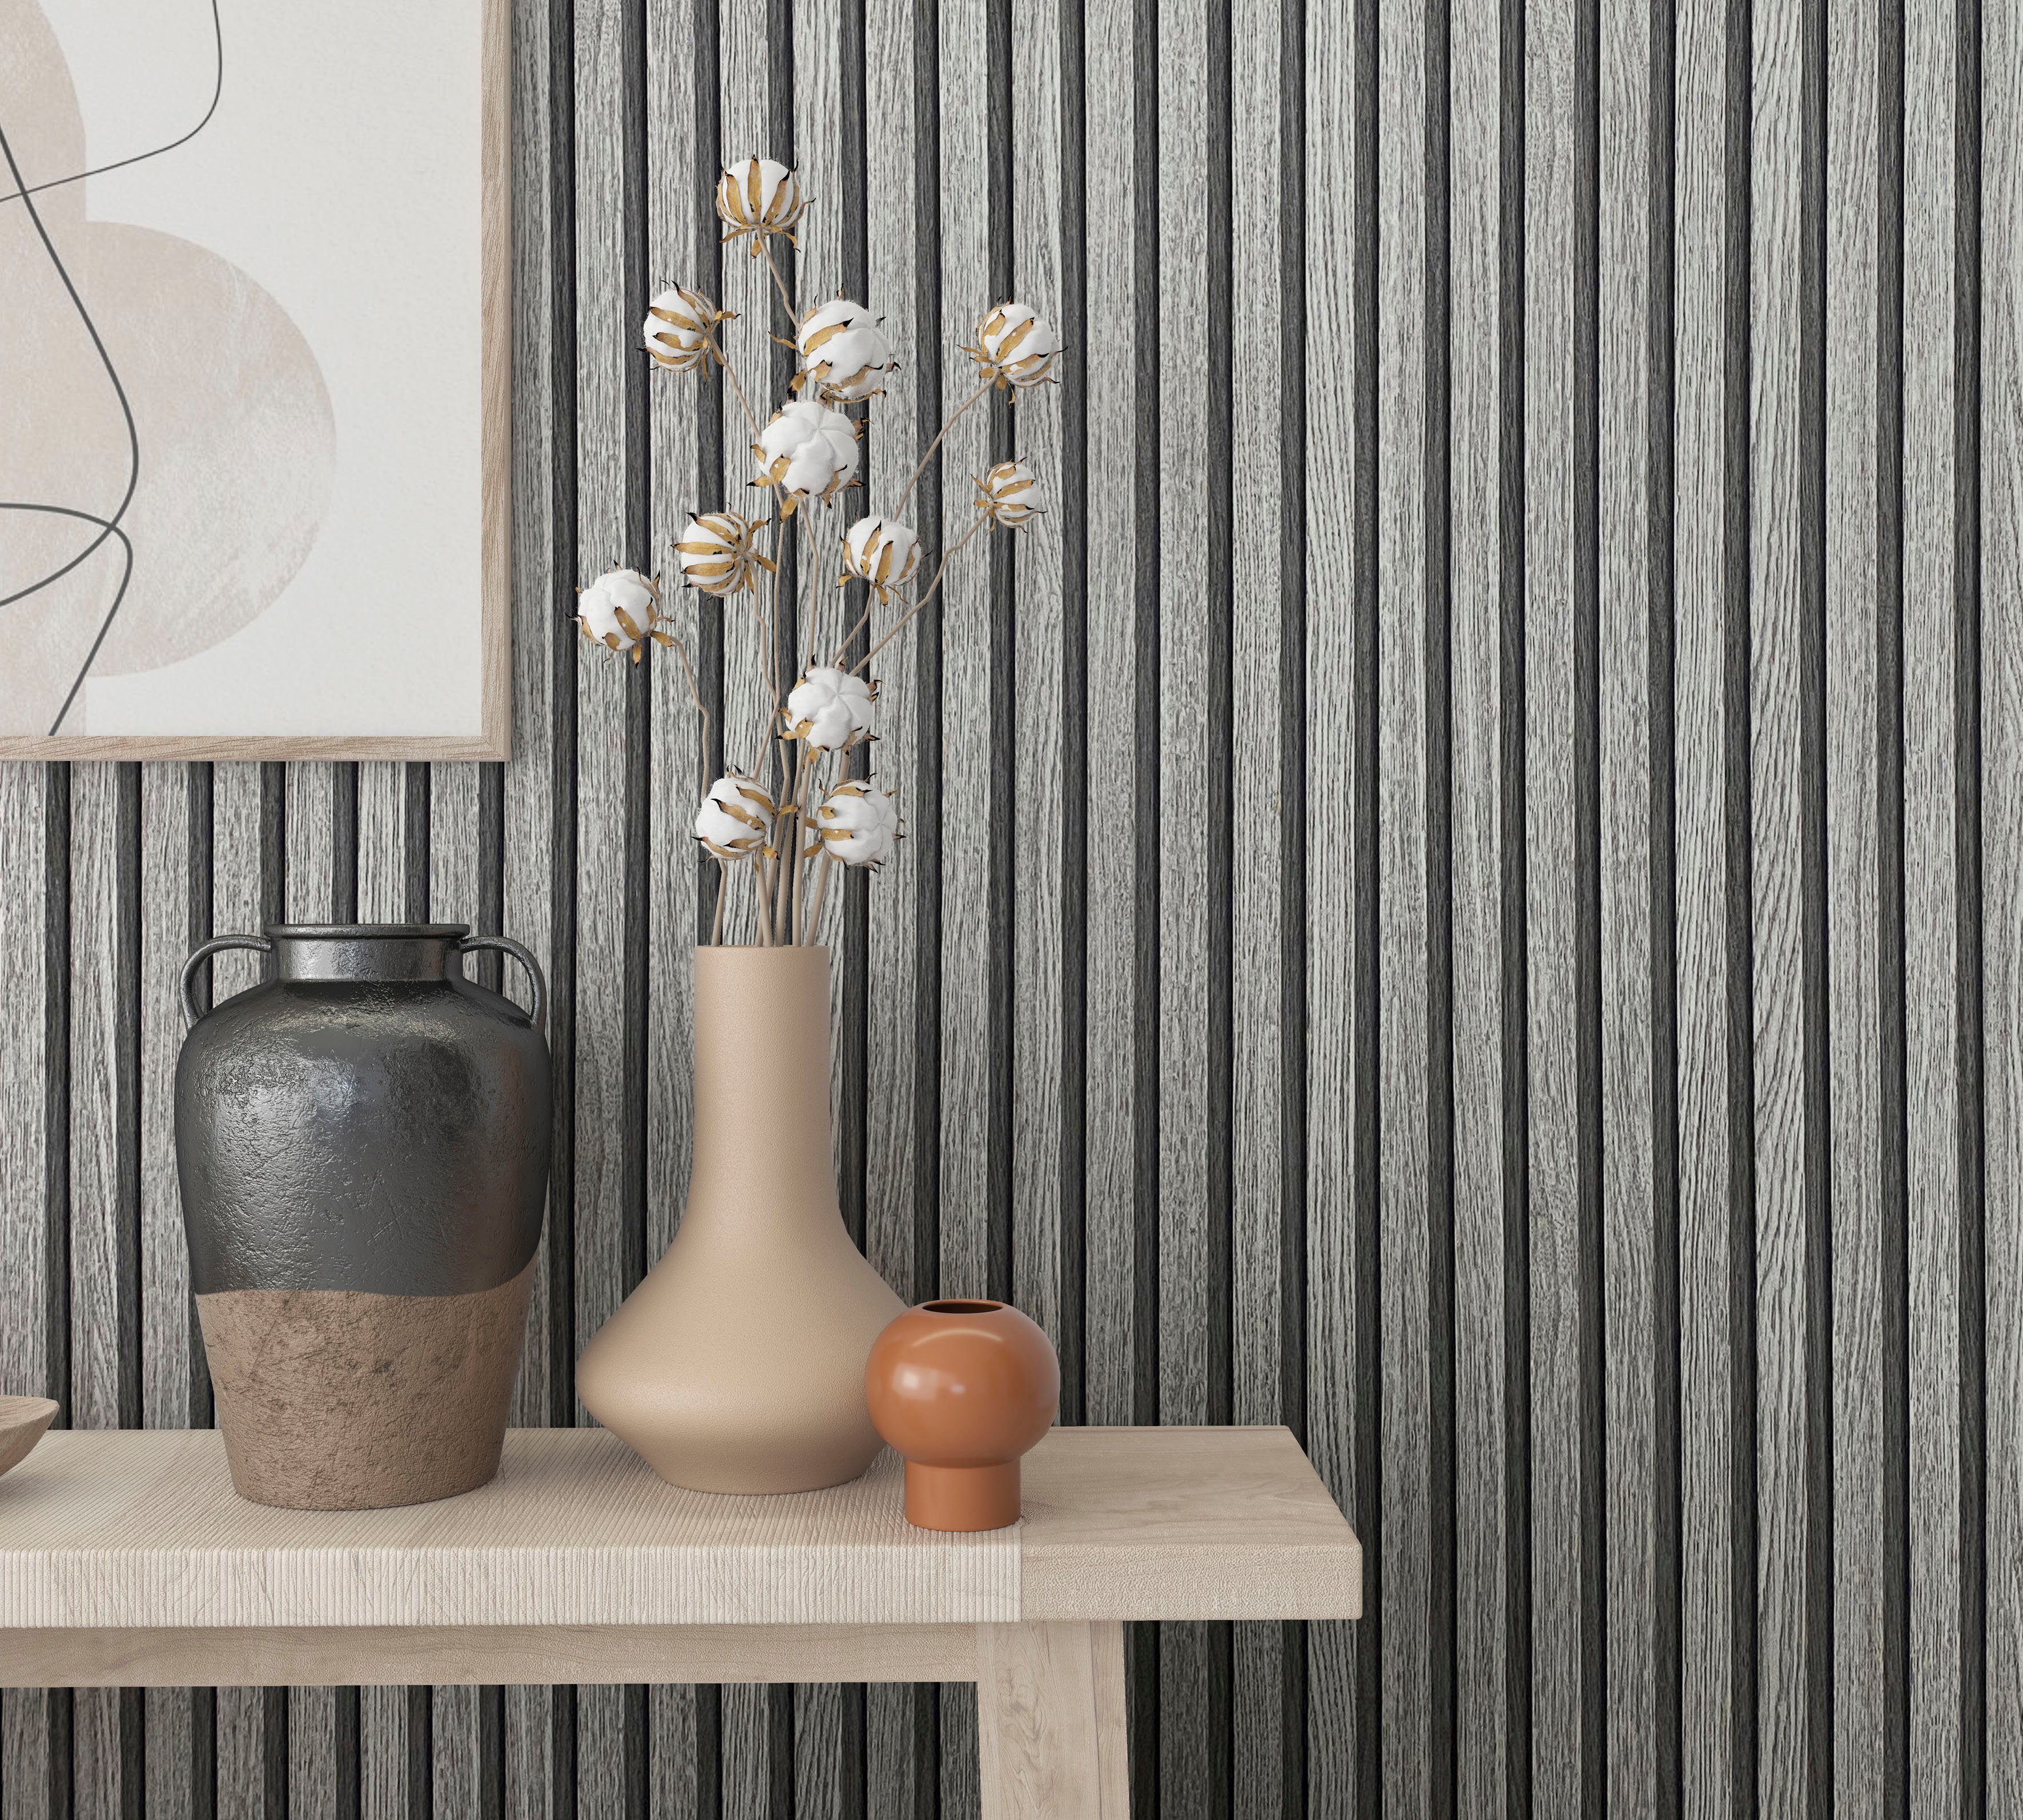 Marburg Vliestapete Timber, geprägt, für 3D Vliestapete Küche moderne Schlafzimmer Wohnzimmer matt, grau